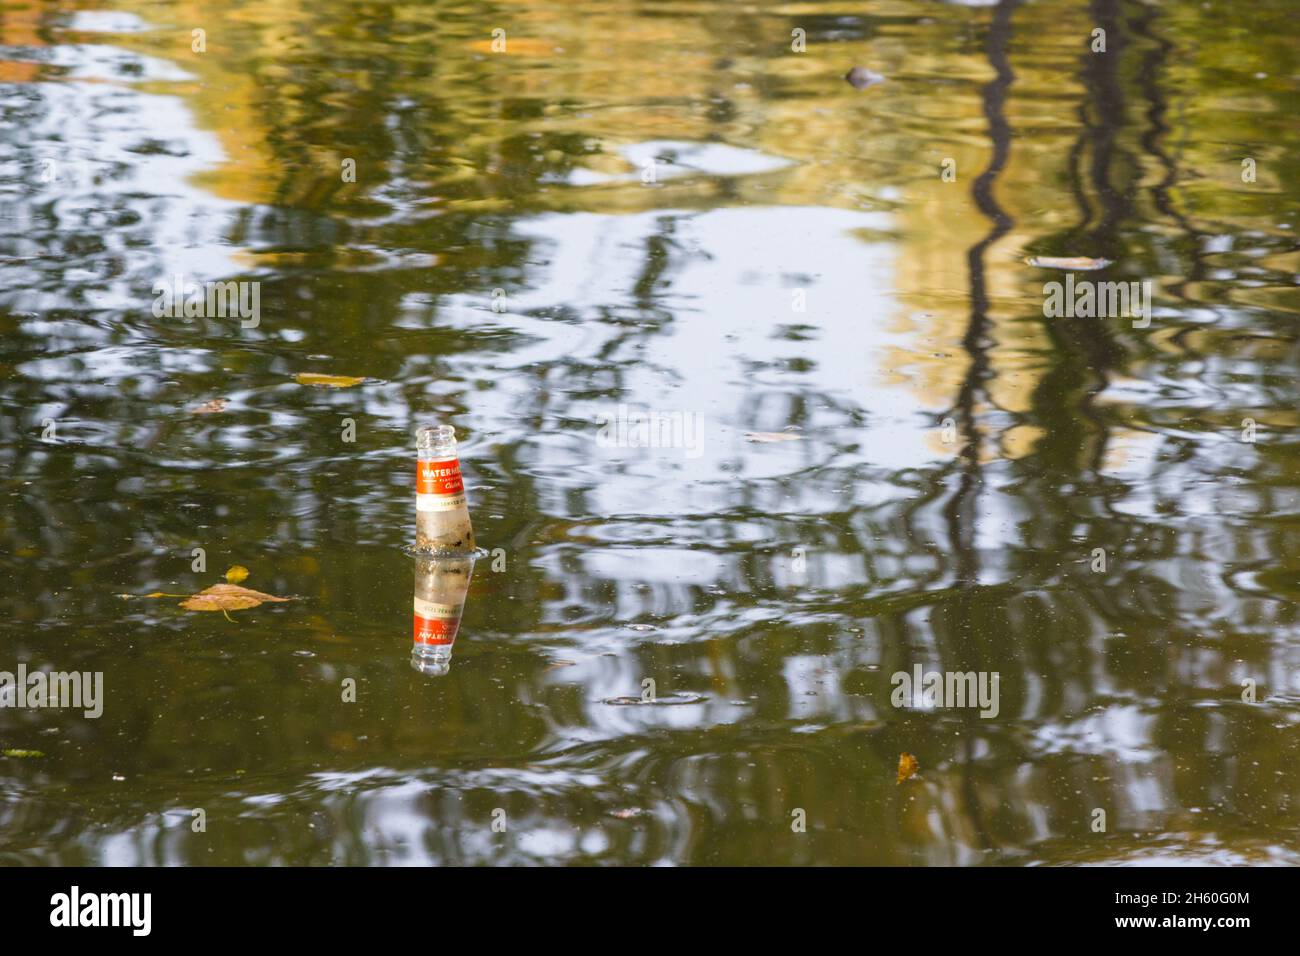 Una bottiglia vuota di sidro aromatizzata al melone Somersby gettata nell'acqua del lago galleggiante sulla superficie Foto Stock